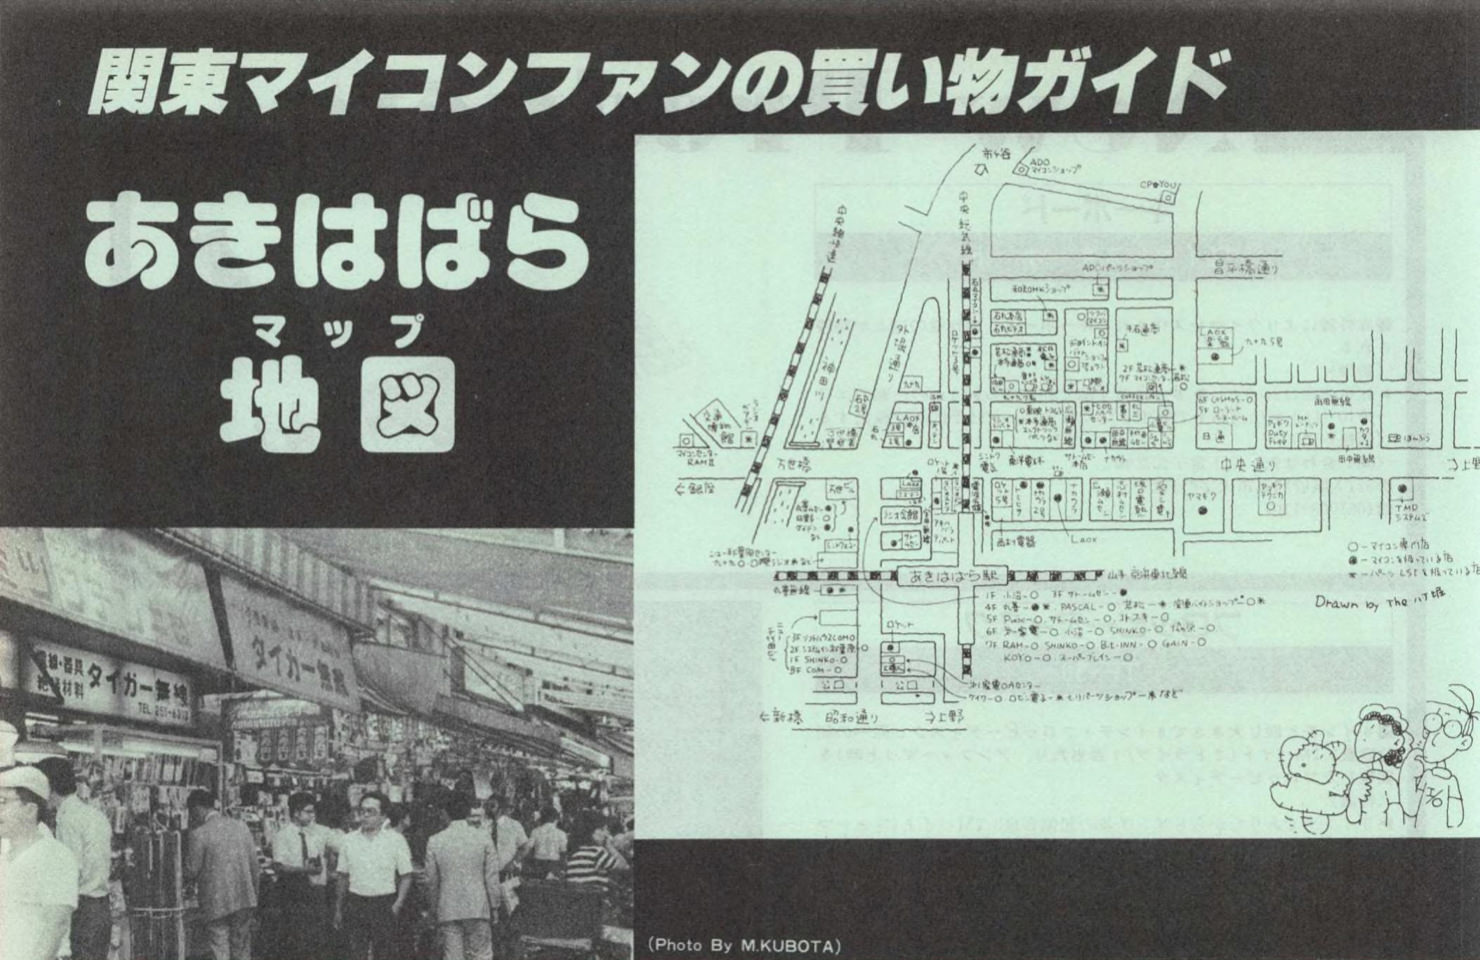 Akihabara, May 1984